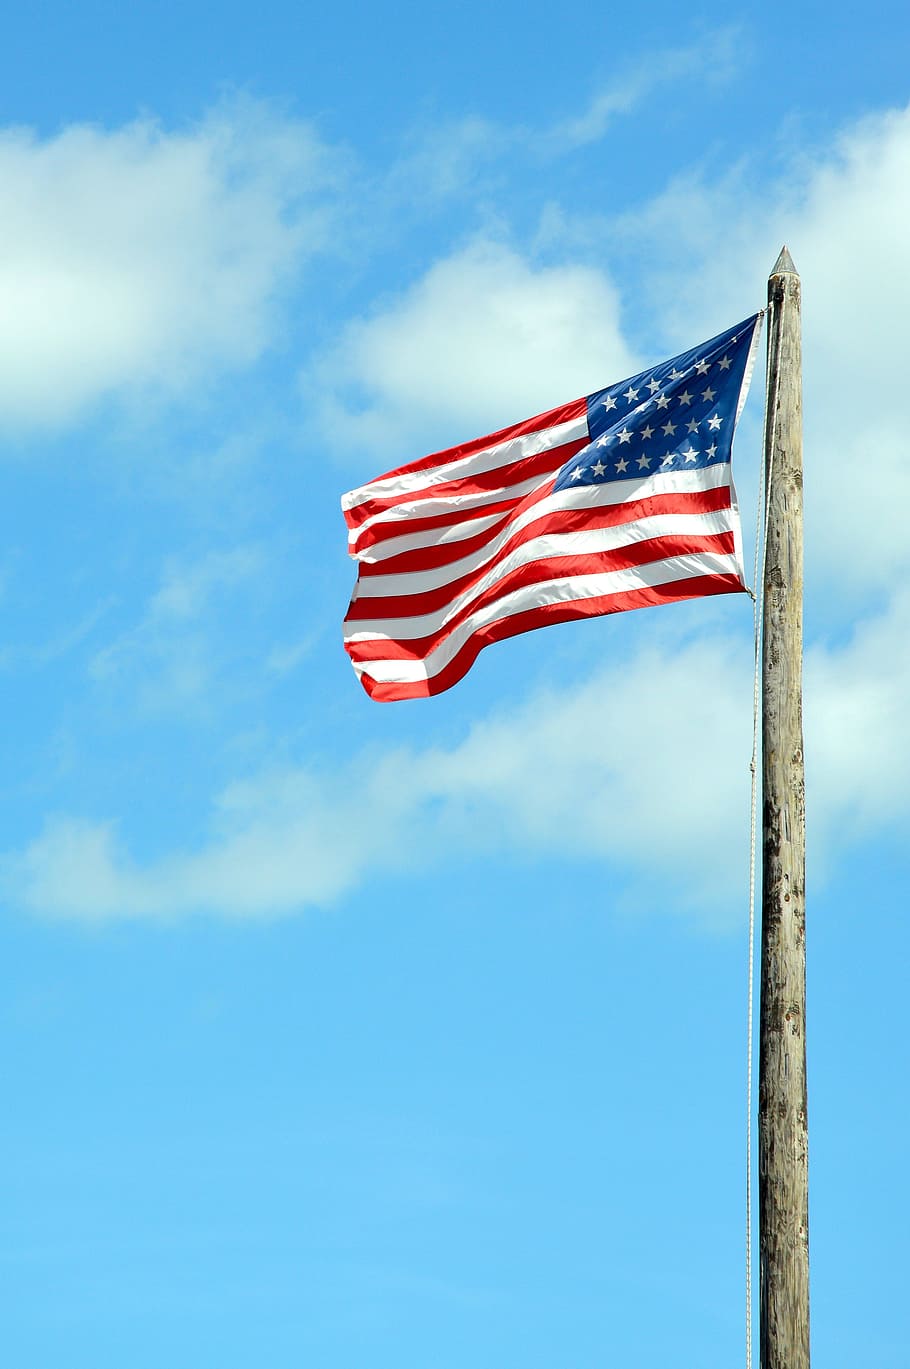 estadounidense, bandera, bandera estadounidense, símbolo, patriótico, ondeando la bandera estadounidense, unido, estados unidos, patriotismo, cielo